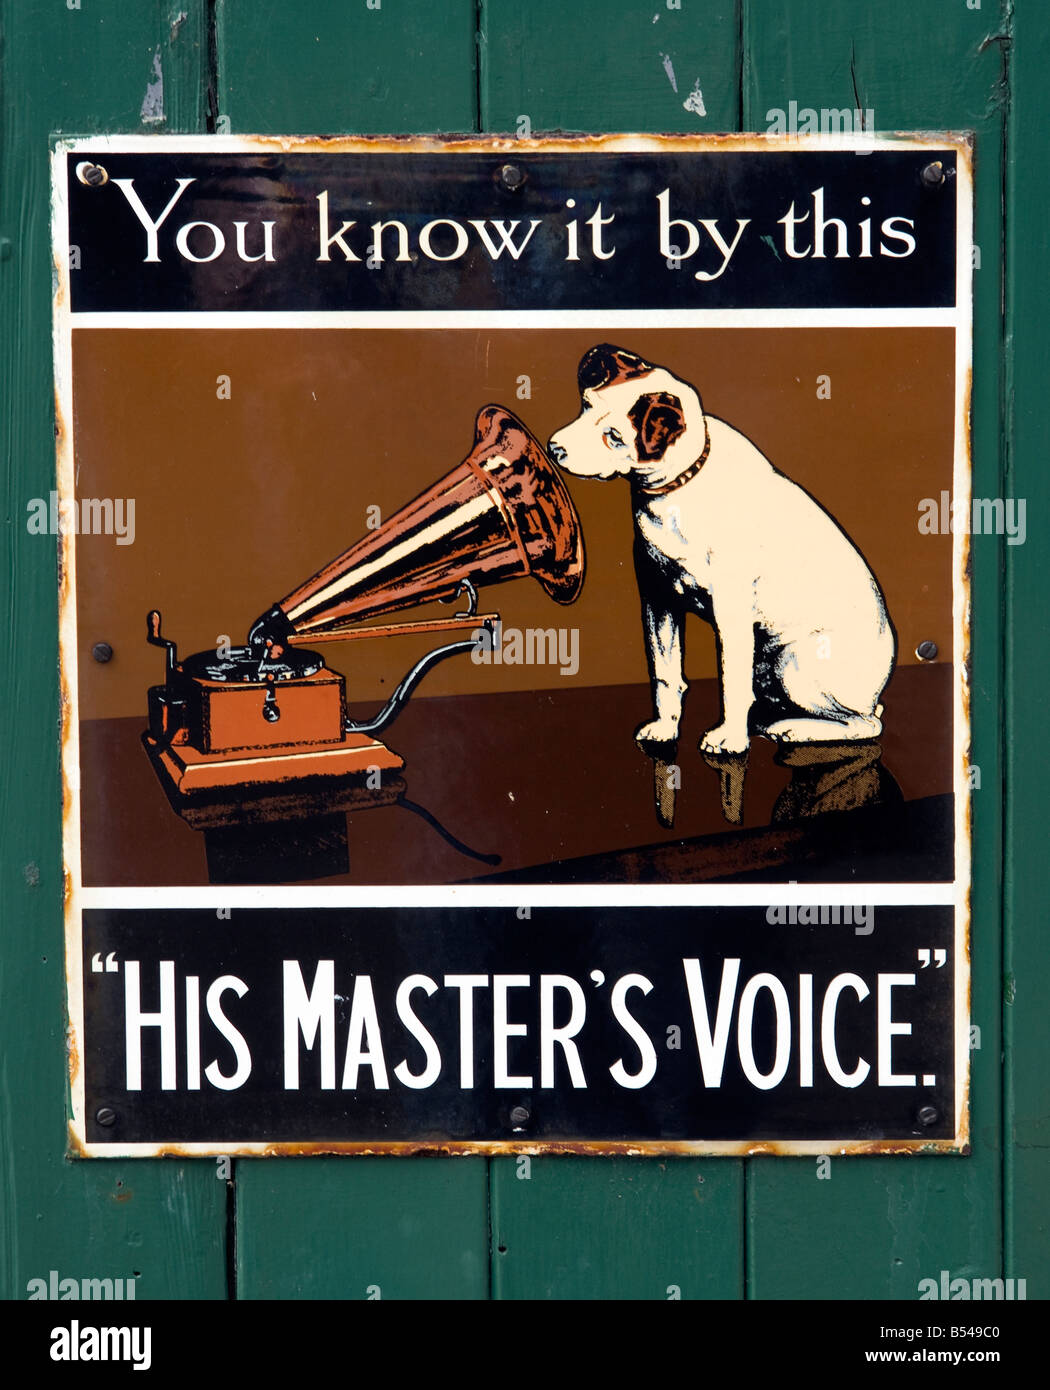 La voix de ses maîtres de chien vieux gramophone hmv signe publicité record hi-fi Banque D'Images